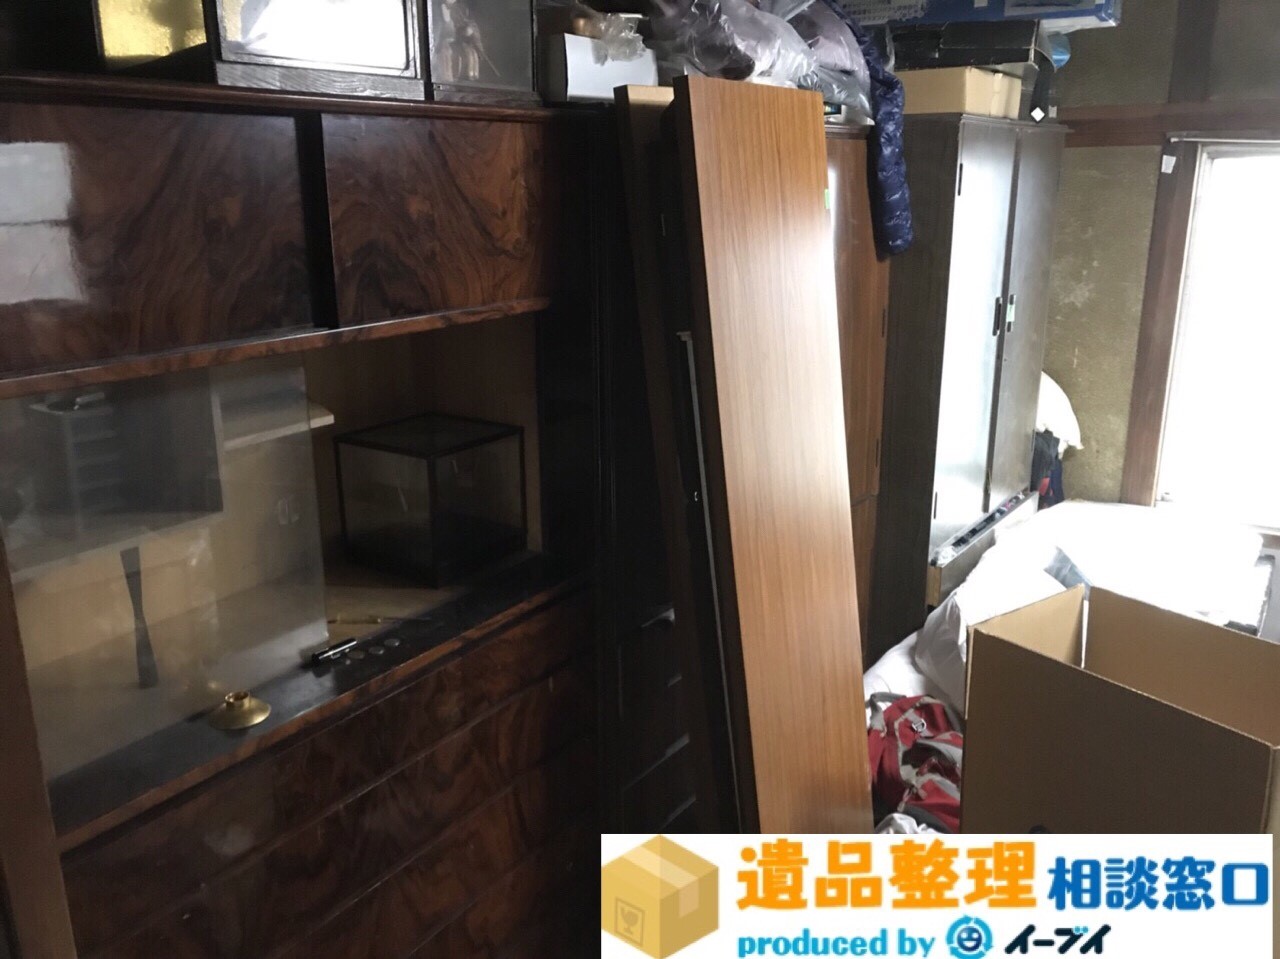 大阪府八尾市で遺品整理の依頼で生活用品の片付けや布団など処分をしました。のアイキャッチ